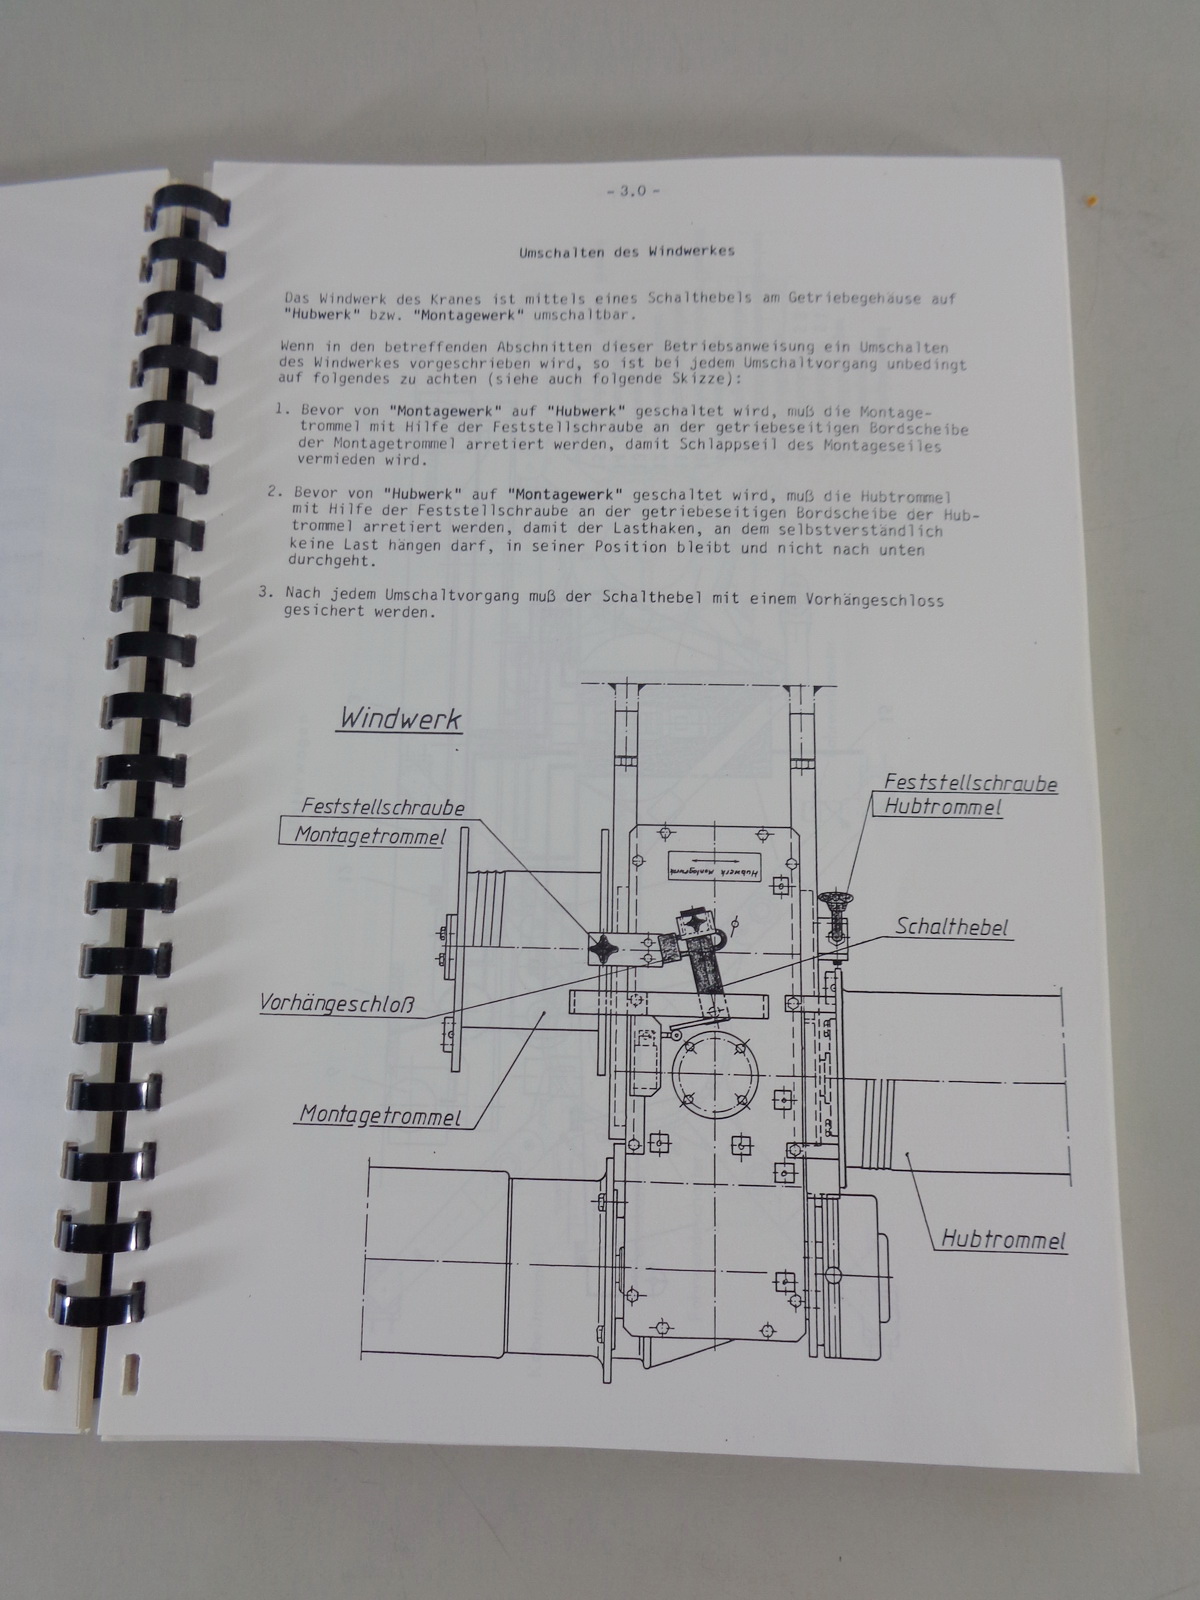 Technische Beschreibung Liebherr Turmdrehkran 60 KR von 07/1981 Datenblatt 